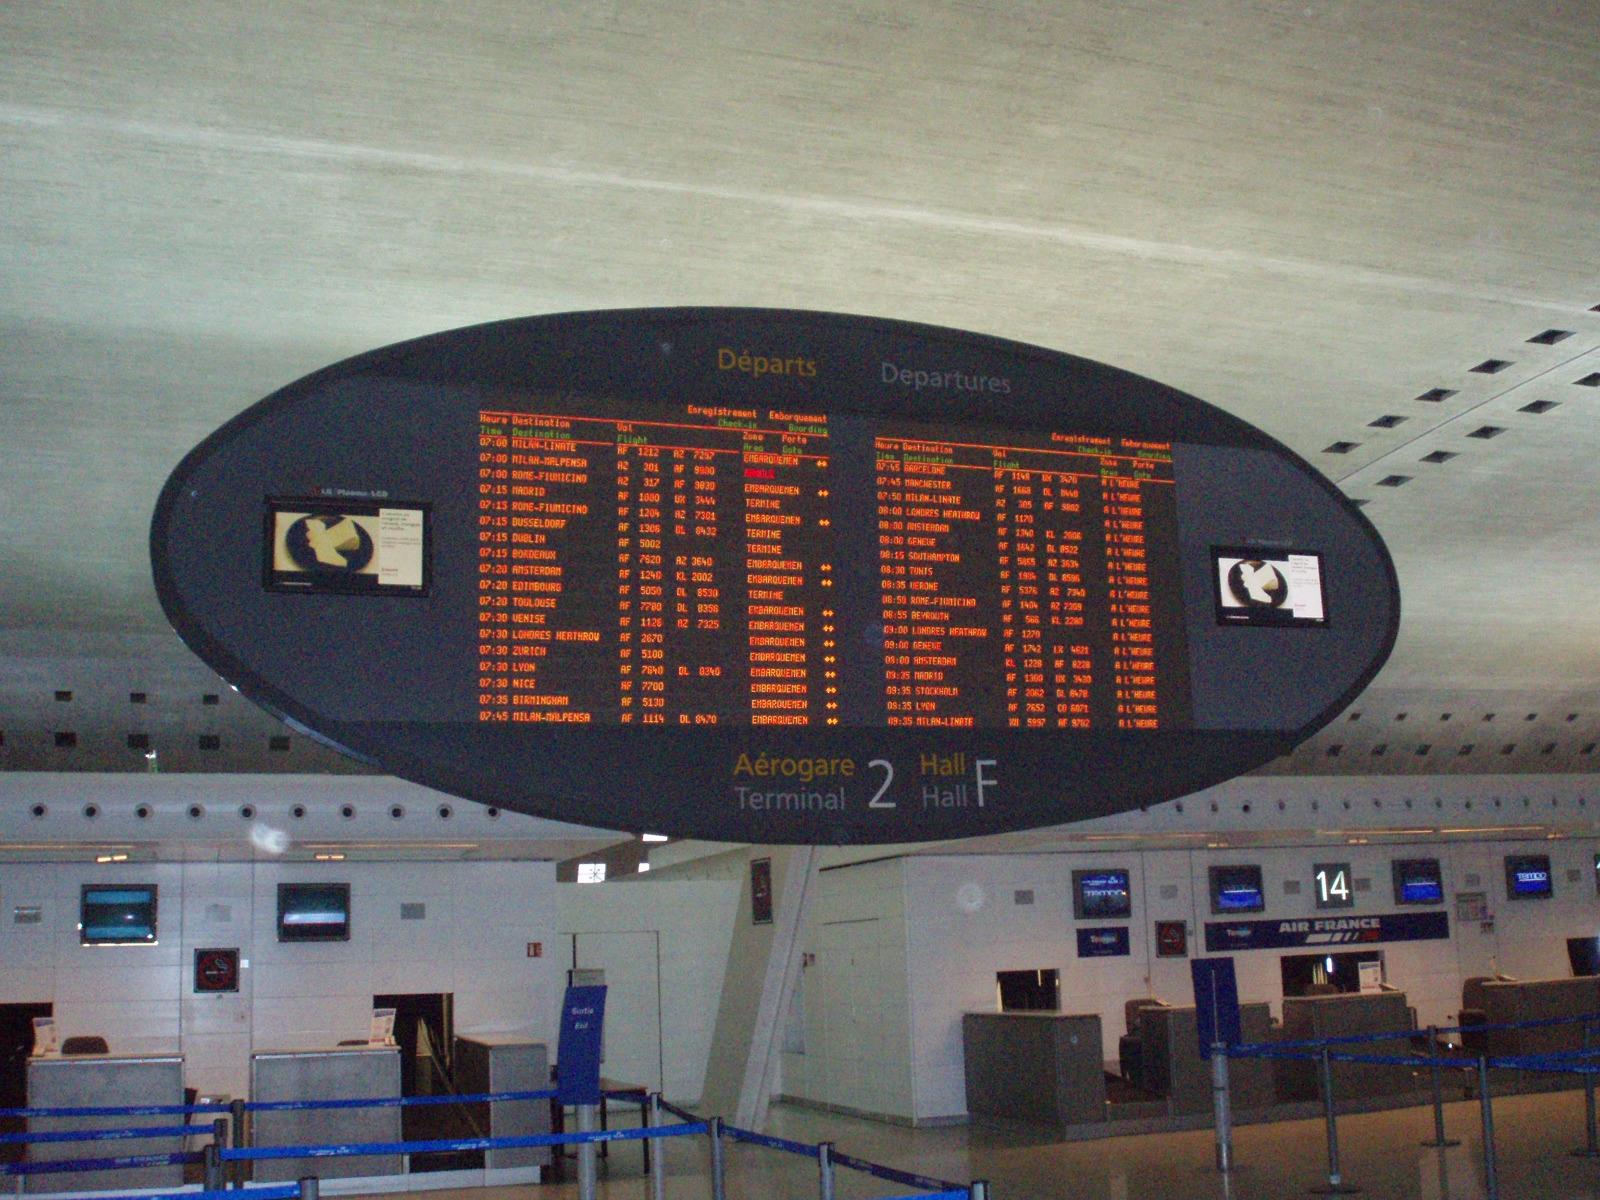 Système d'Information de terminal aérien à l'aéroport Paris-Charles-de-Gaule 2F à 10:26, le 21 avril 2007.